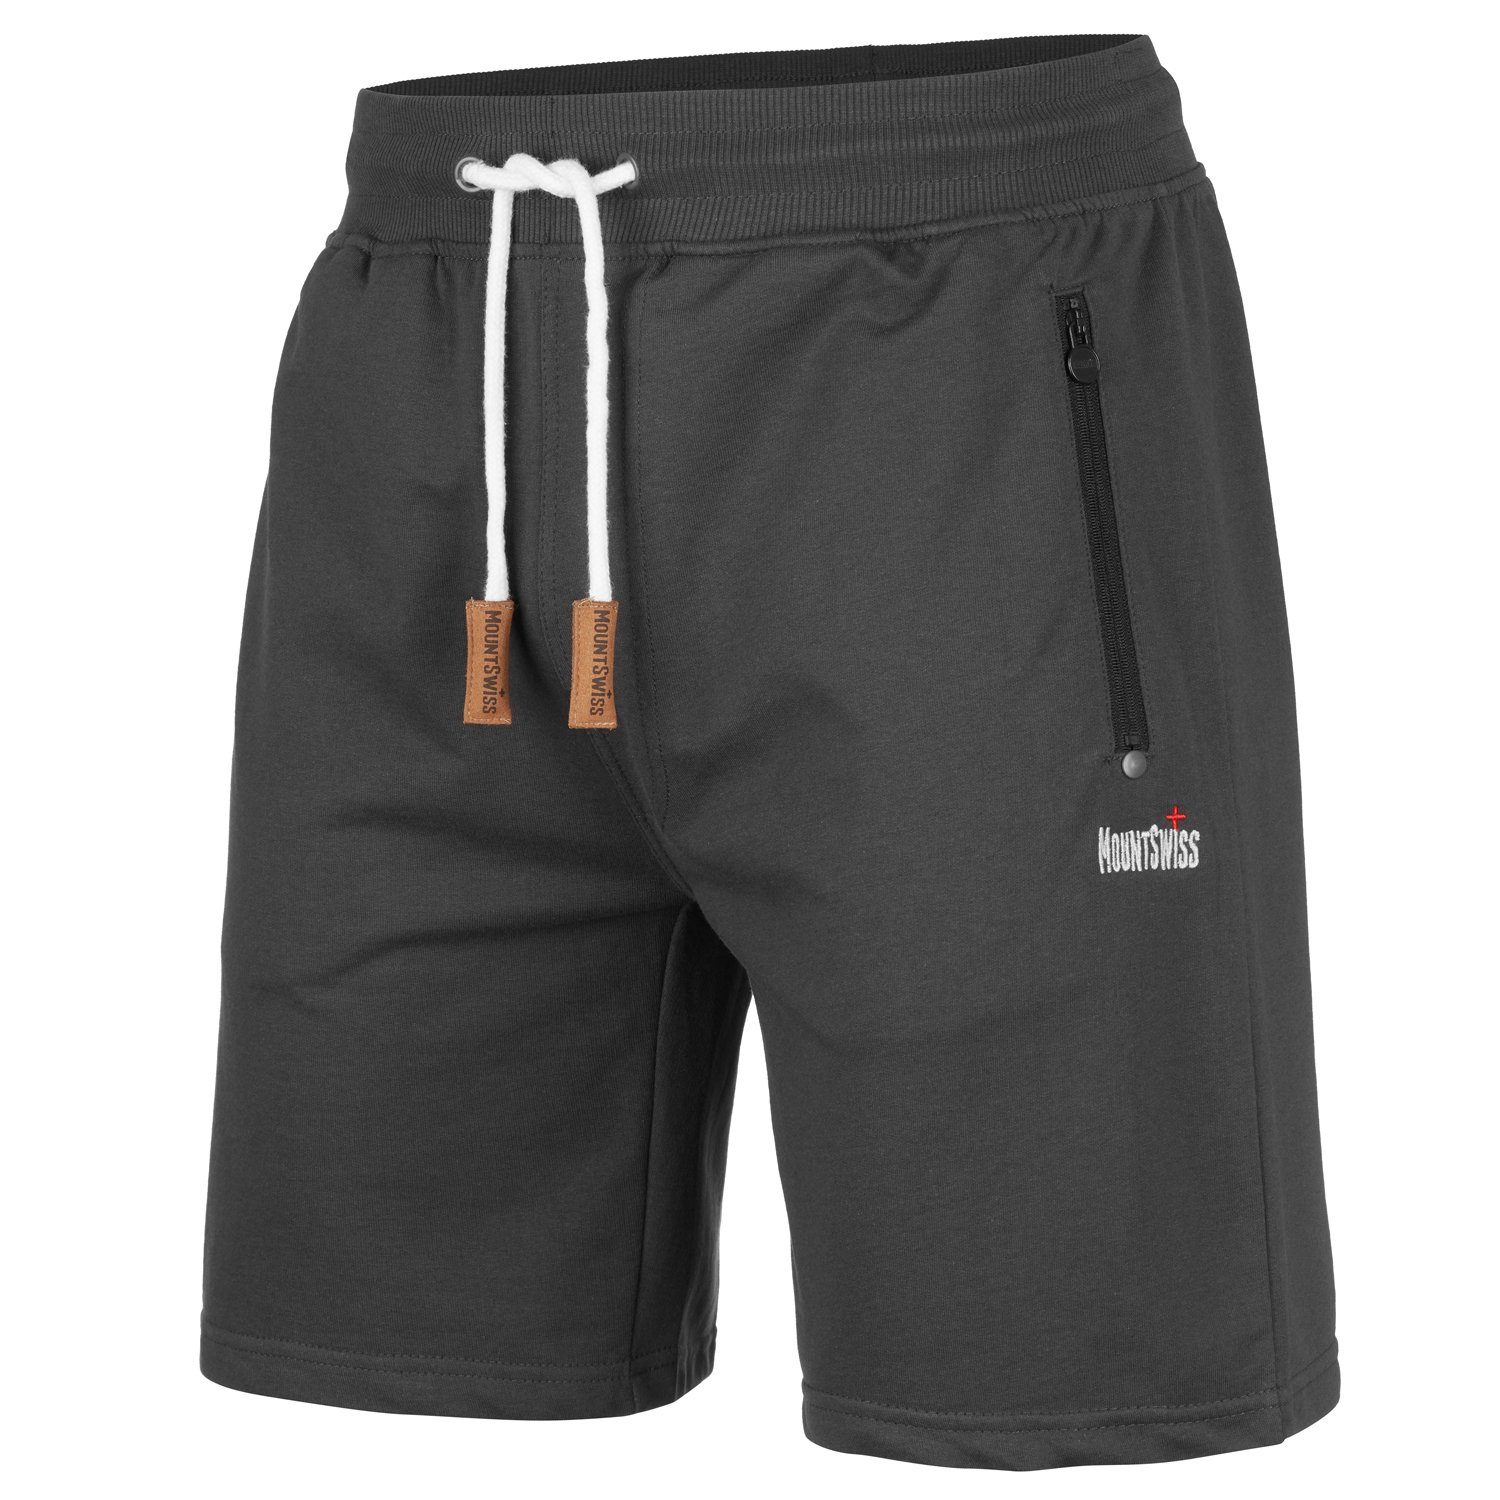 Shorts online bestellen » Shorts für Herren | OTTO